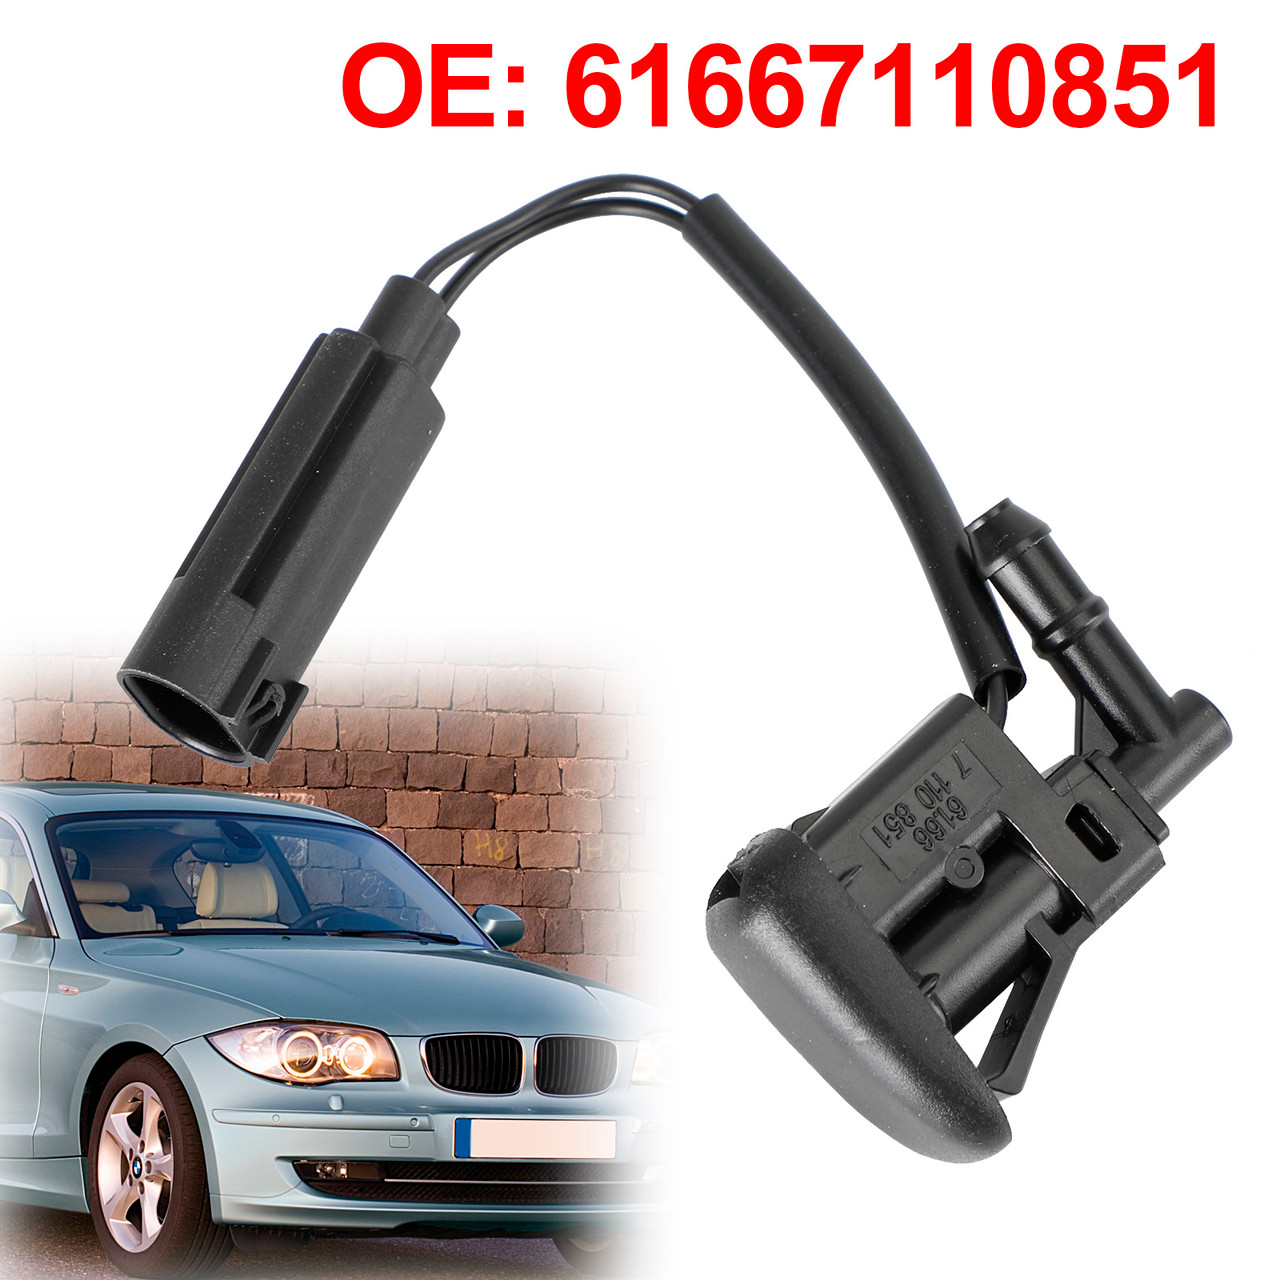 Windshield Wiper Nozzle Spray Heated for BMW 1 Z4 X5 Series E53 E81 61667110851